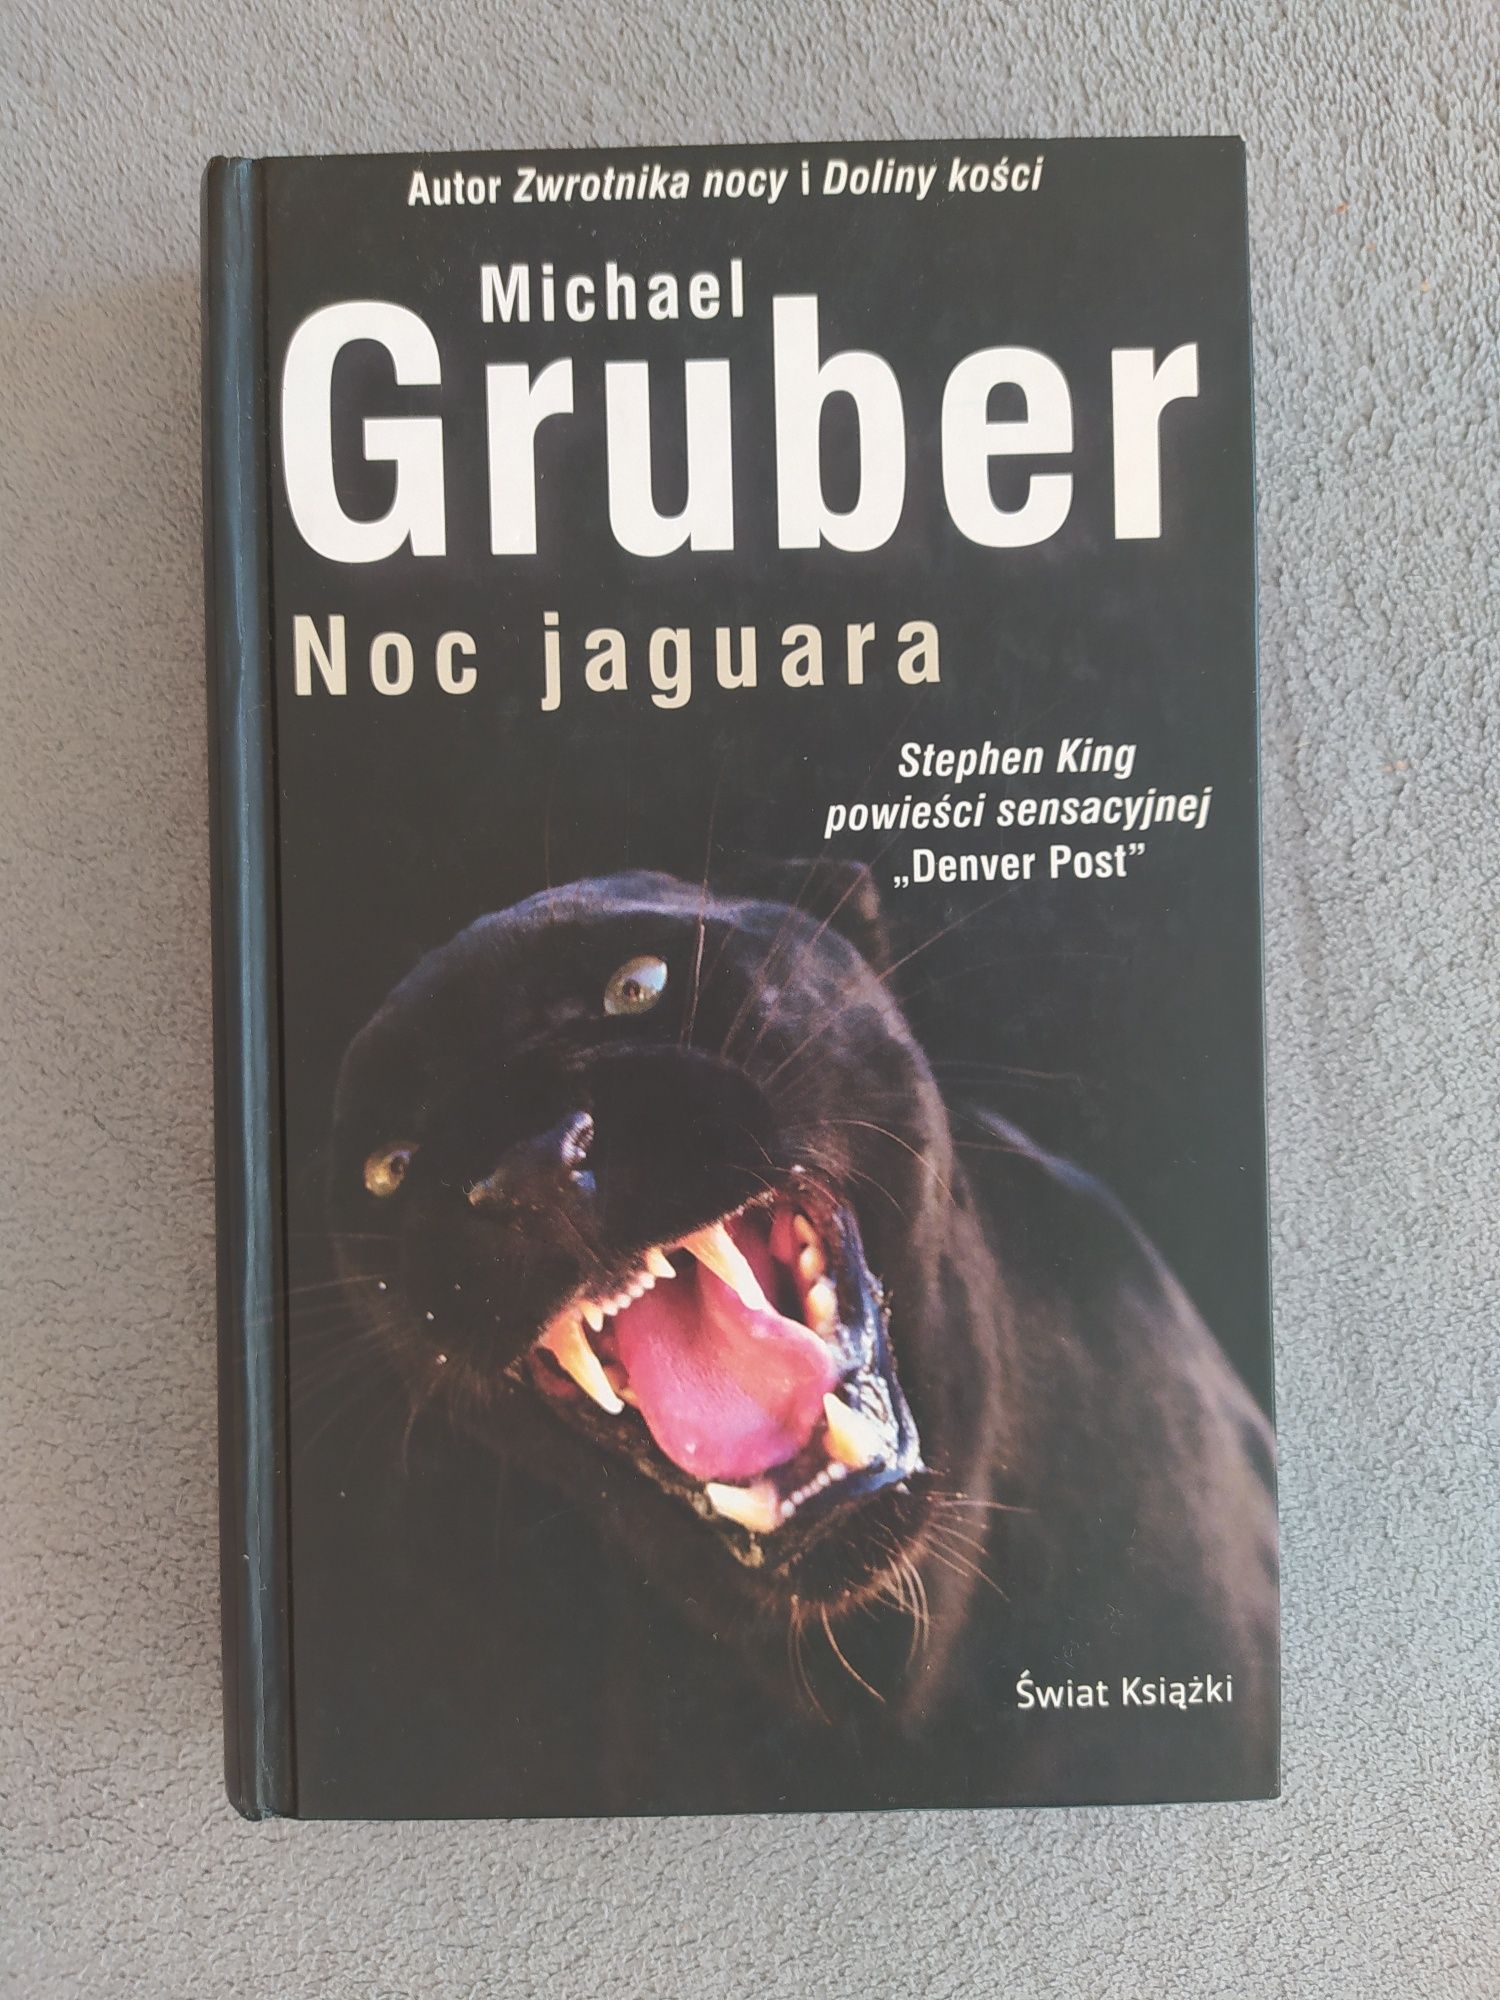 Michael Gruber "Noc jaguara"